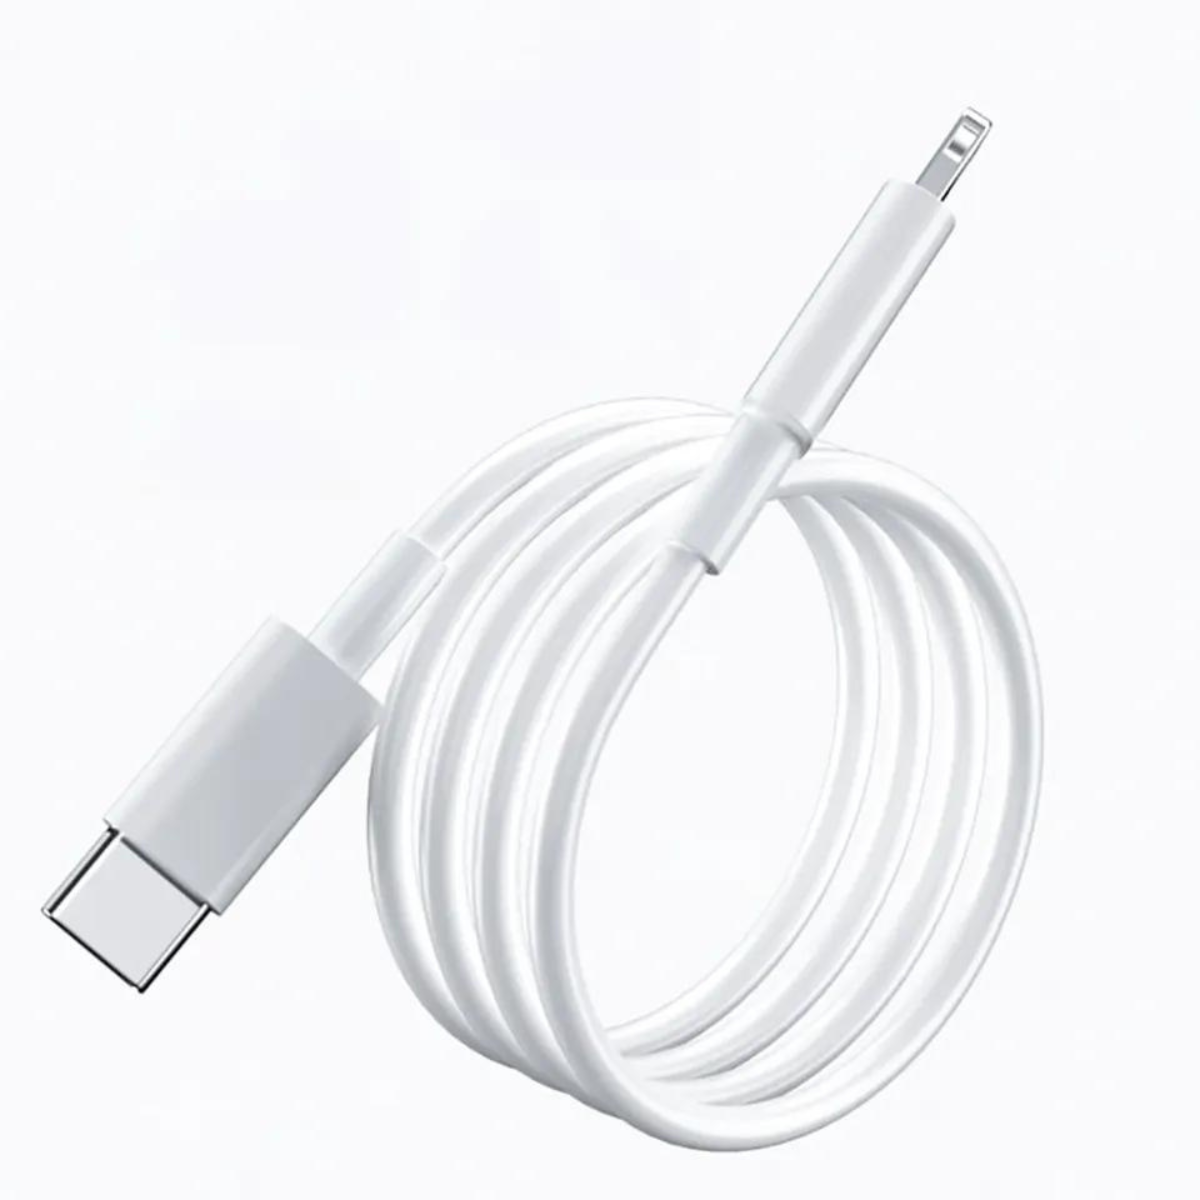 Ladegerät Netzteil für + Apple, USB Ladekabel weiß C 12, Ladekabel 2m Apple 11, Apple, TRMK für XS 20W 13, 14, XR, iPhone